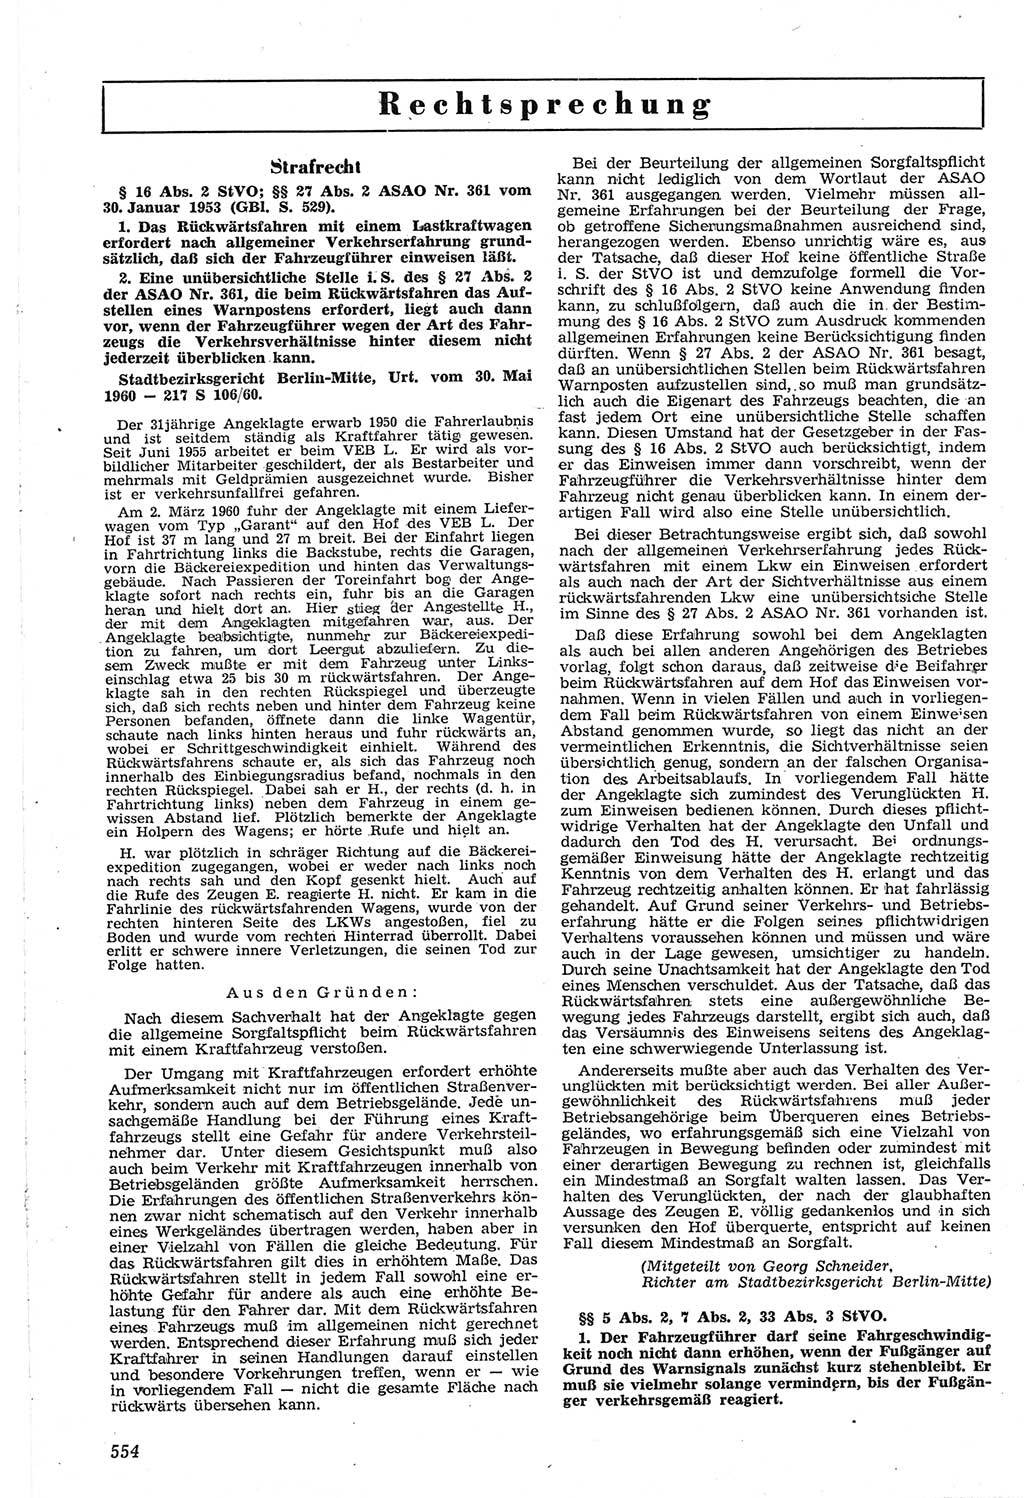 Neue Justiz (NJ), Zeitschrift für Recht und Rechtswissenschaft [Deutsche Demokratische Republik (DDR)], 14. Jahrgang 1960, Seite 554 (NJ DDR 1960, S. 554)